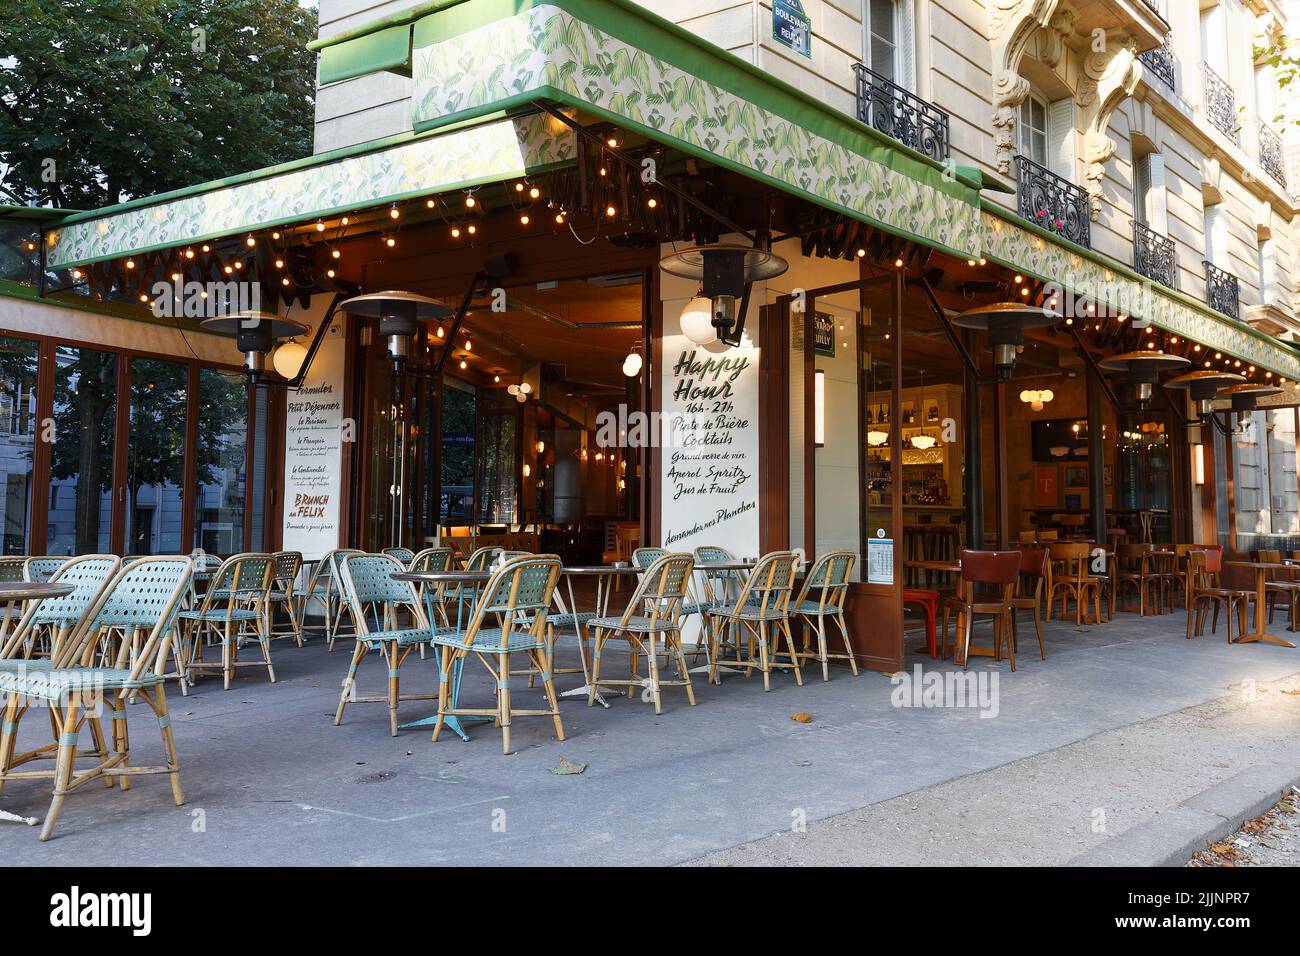 Situado en el distrito 12th, el Felix Cafe representa el concepto de brasserie parisina, con un ambiente cómodo y un ambiente agradable. Foto de stock